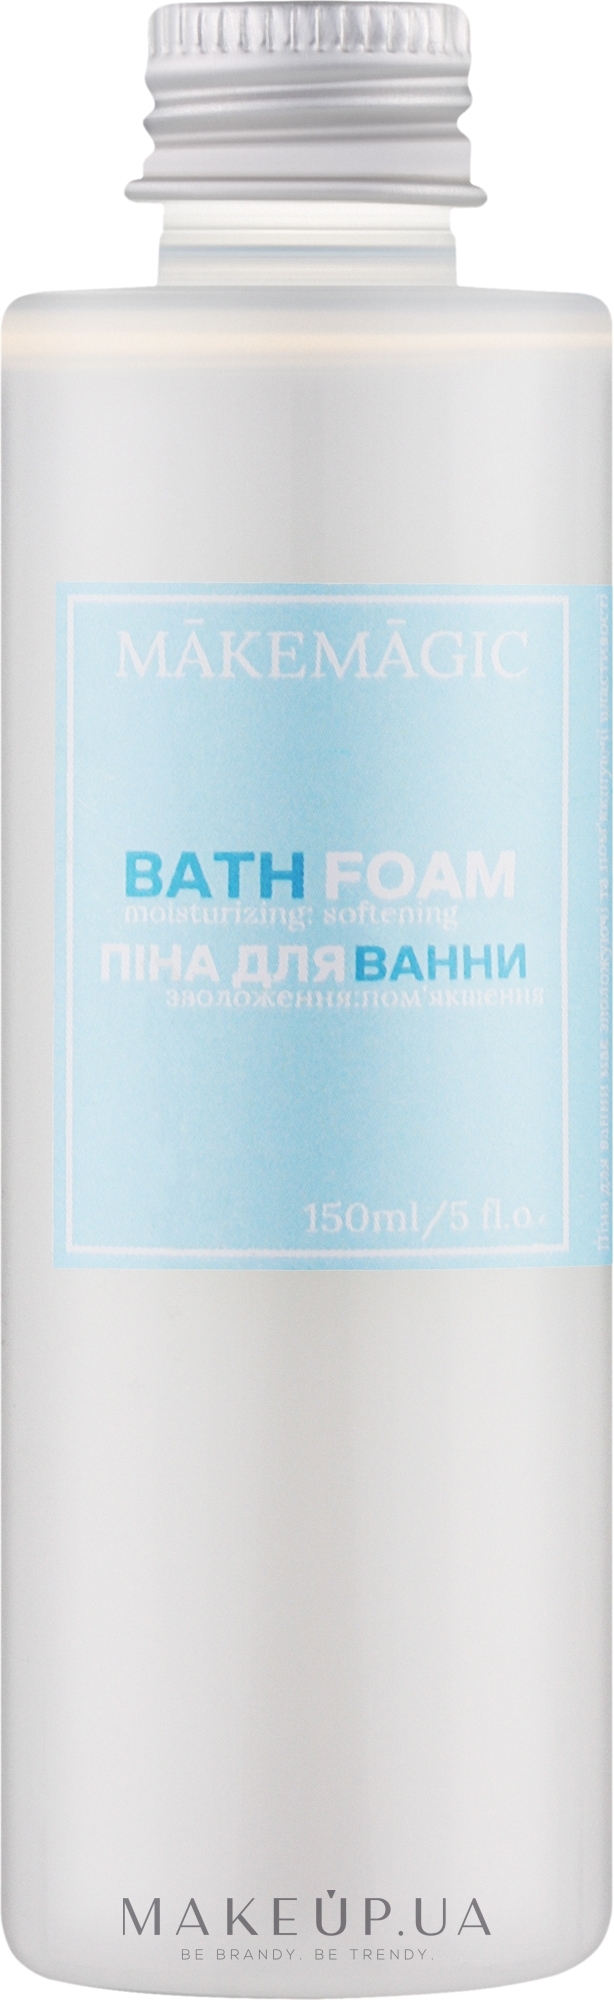 Пінка для ванни "Кокос" - Makemagic Bath Foam — фото 150ml